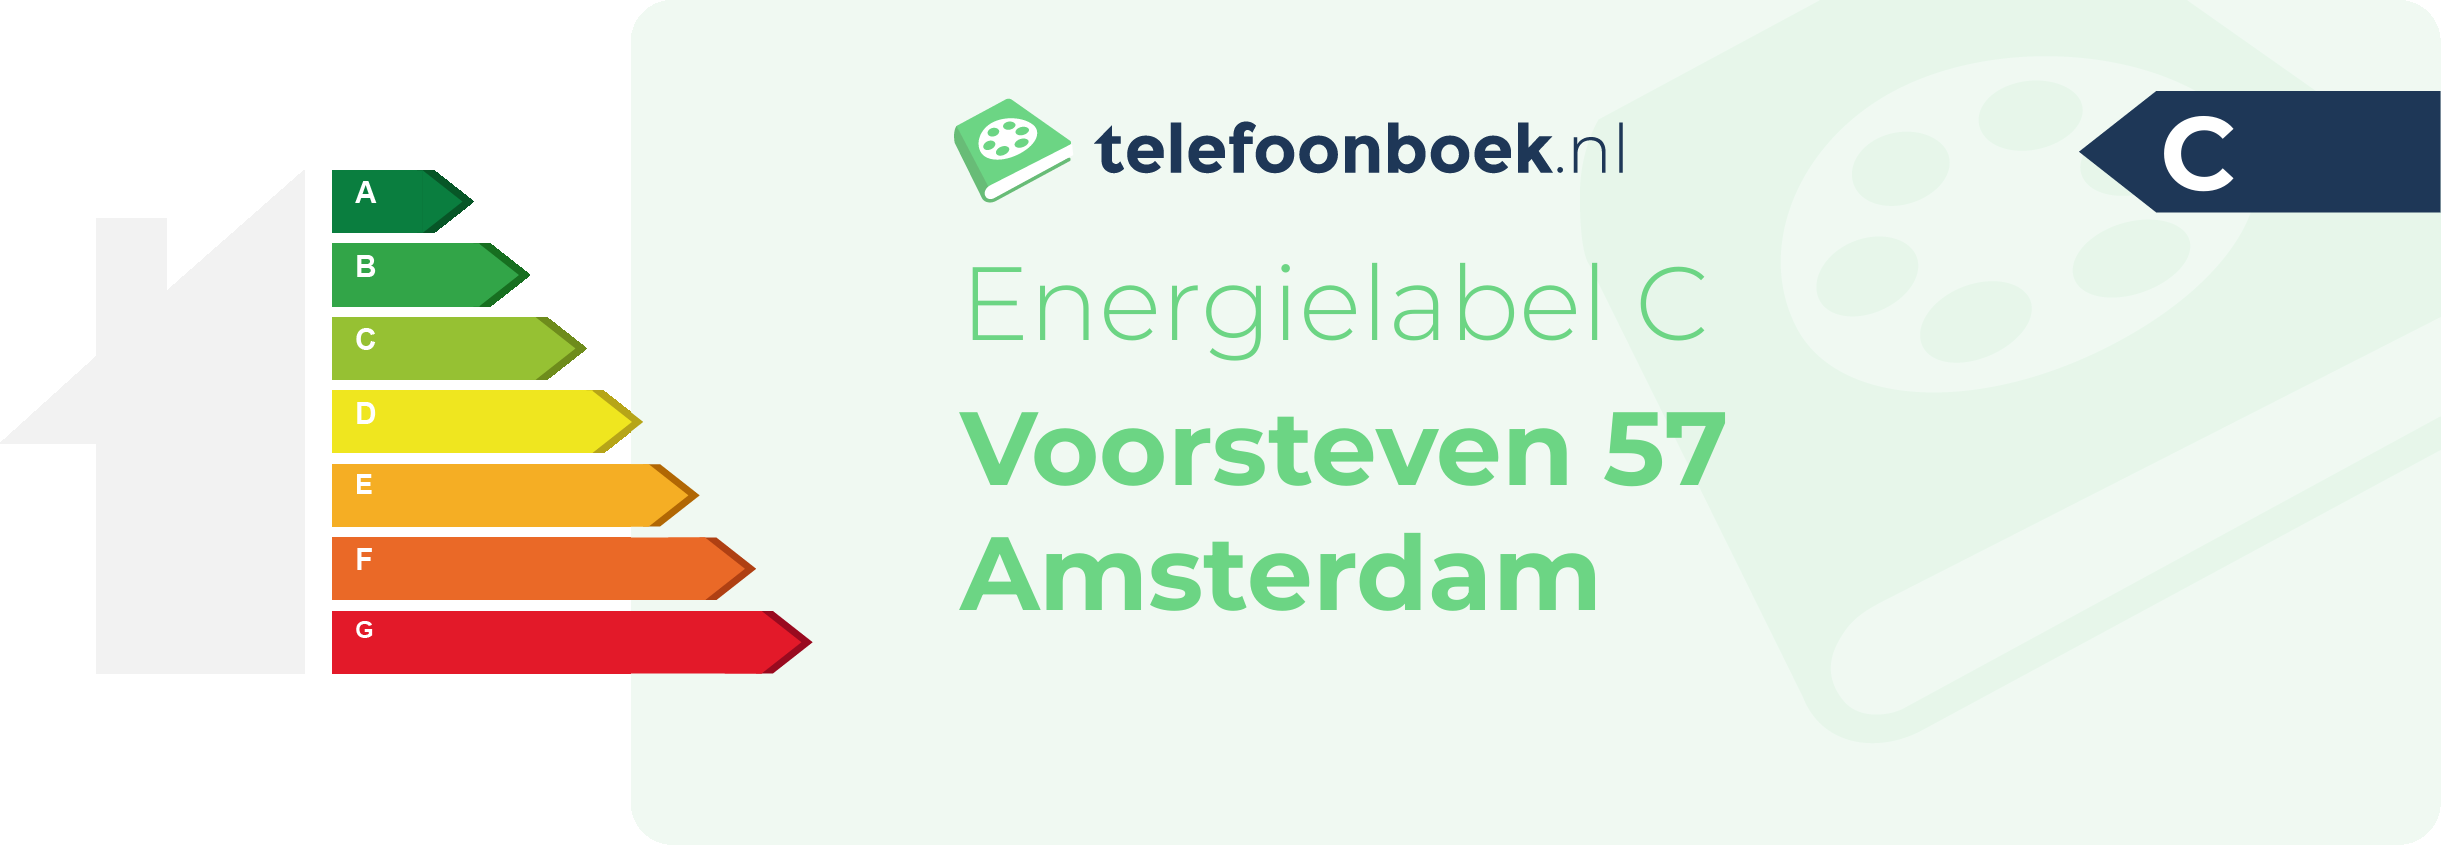 Energielabel Voorsteven 57 Amsterdam